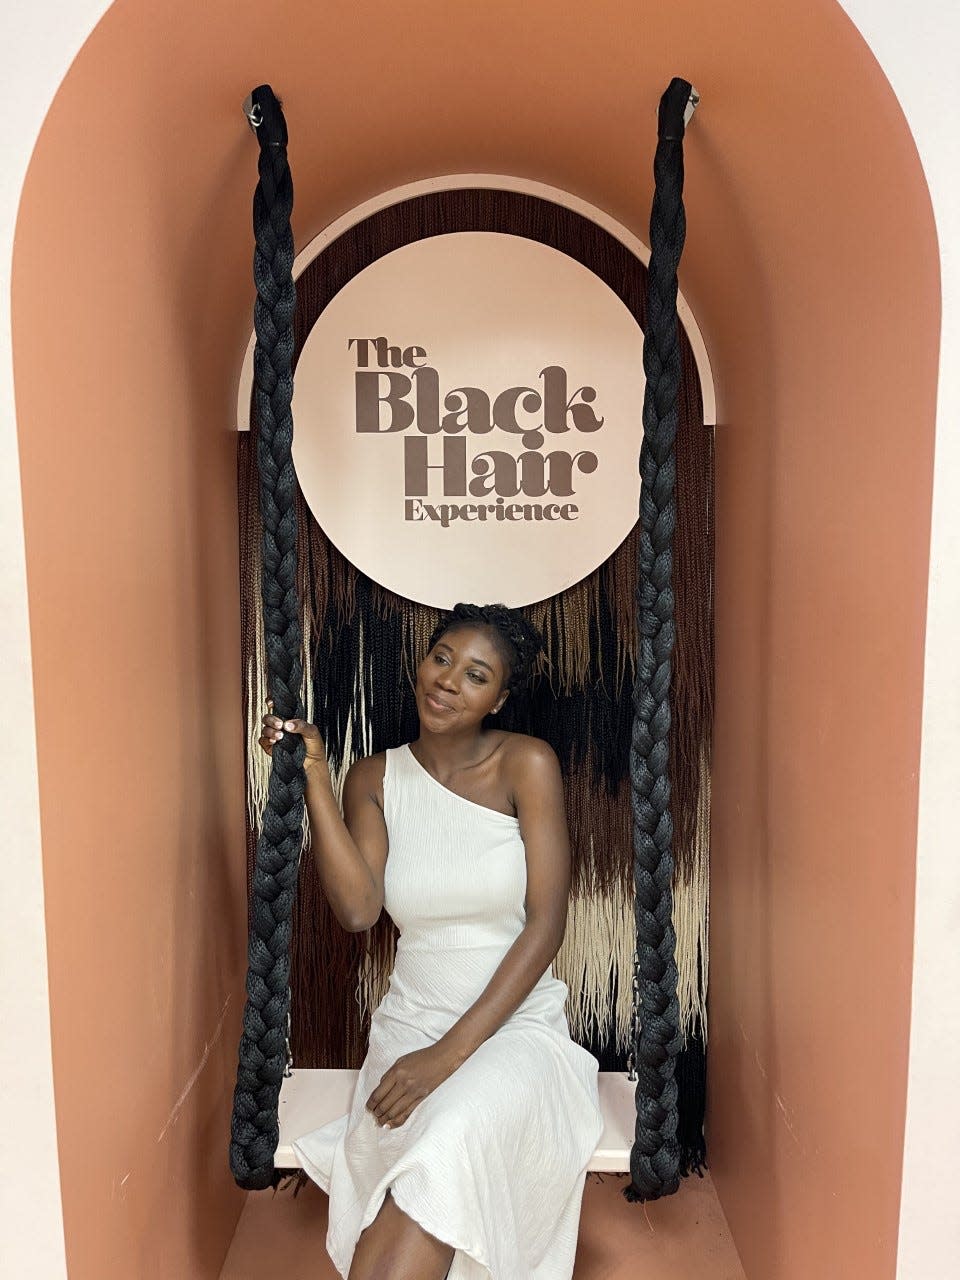 Tina at the Black Hair Experience